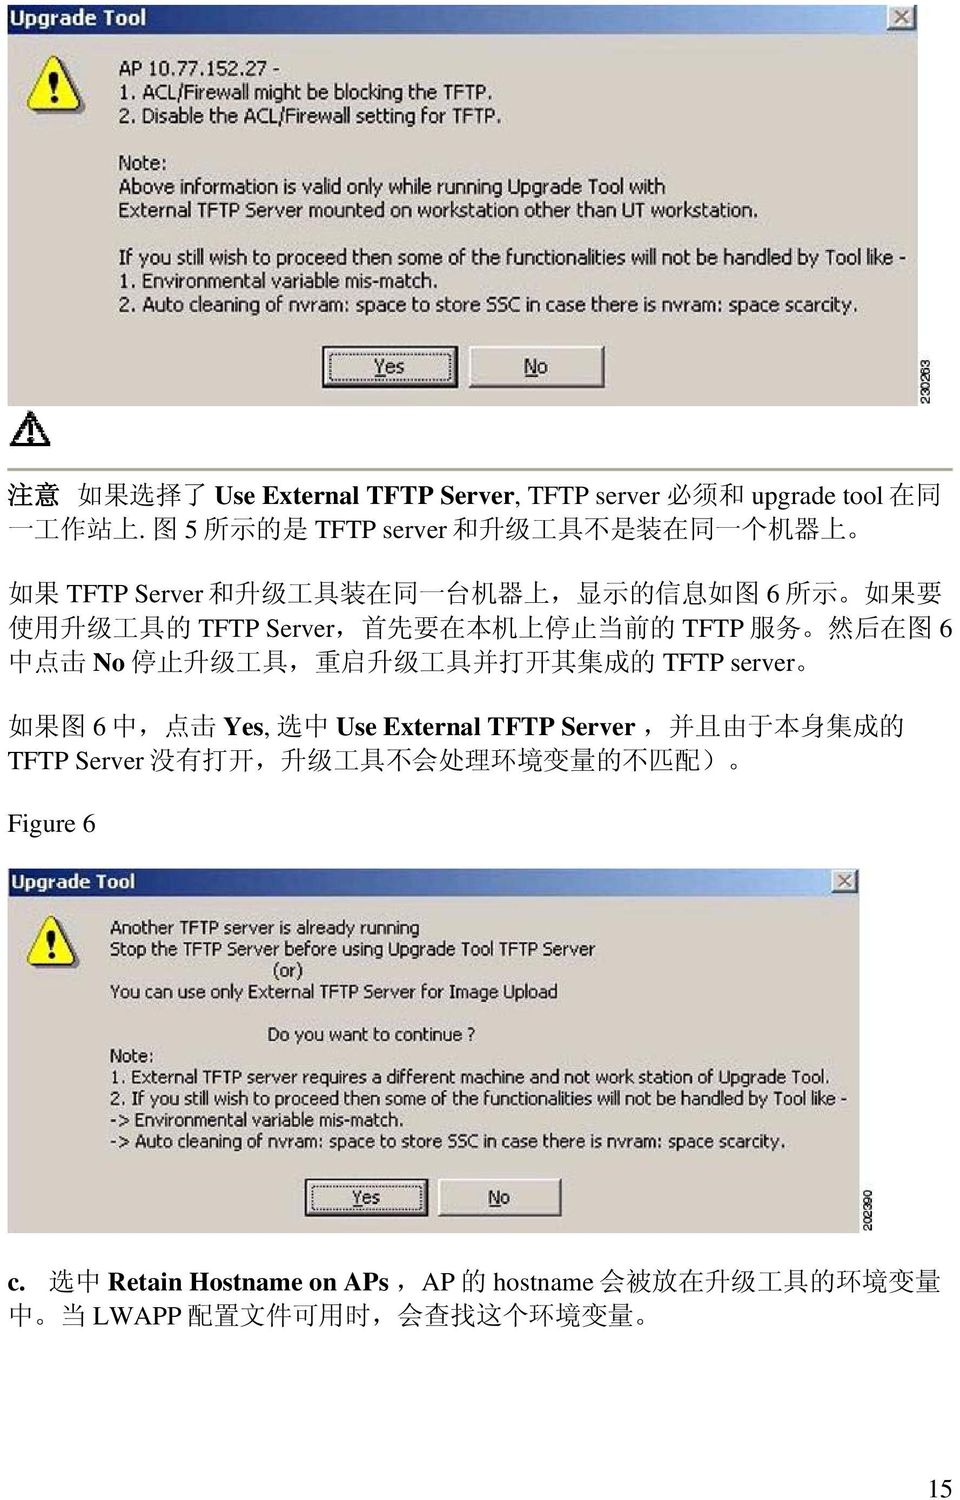 Server, 首 先 要 在 本 机 上 停 止 当 前 的 TFTP 服 务 然 后 在 图 6 中 点 击 No 停 止 升 级 工 具, 重 启 升 级 工 具 并 打 开 其 集 成 的 TFTP server 如 果 图 6 中, 点 击 Yes, 选 中 Use